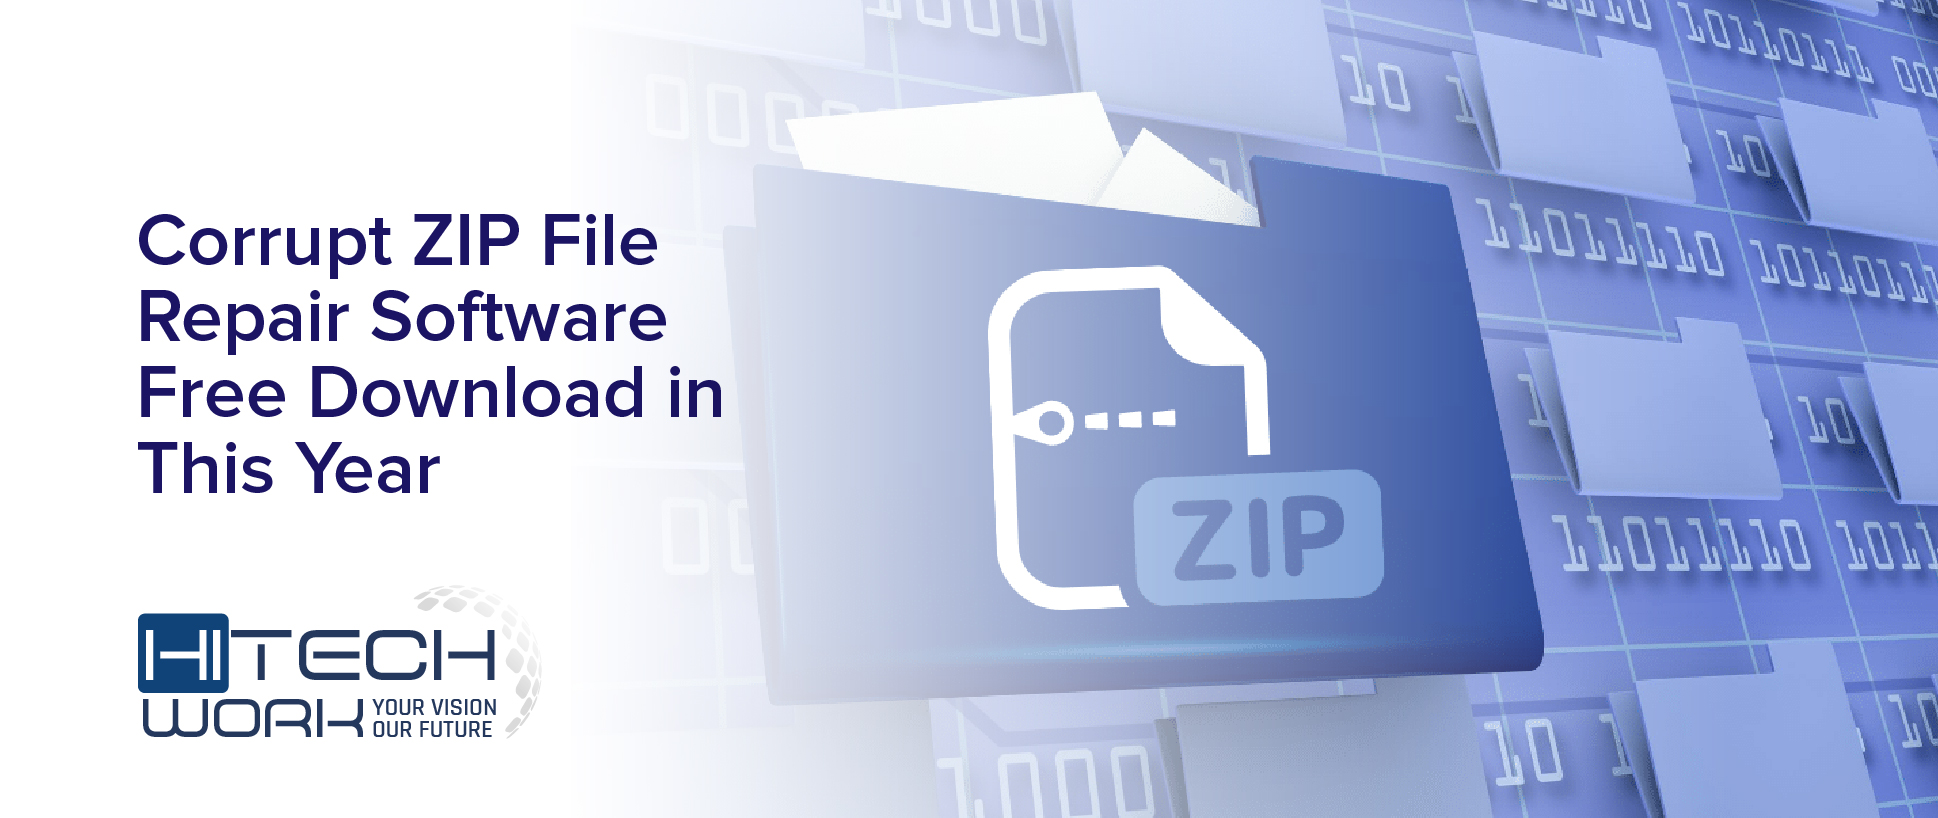 Corrupt ZIP File Repair Software